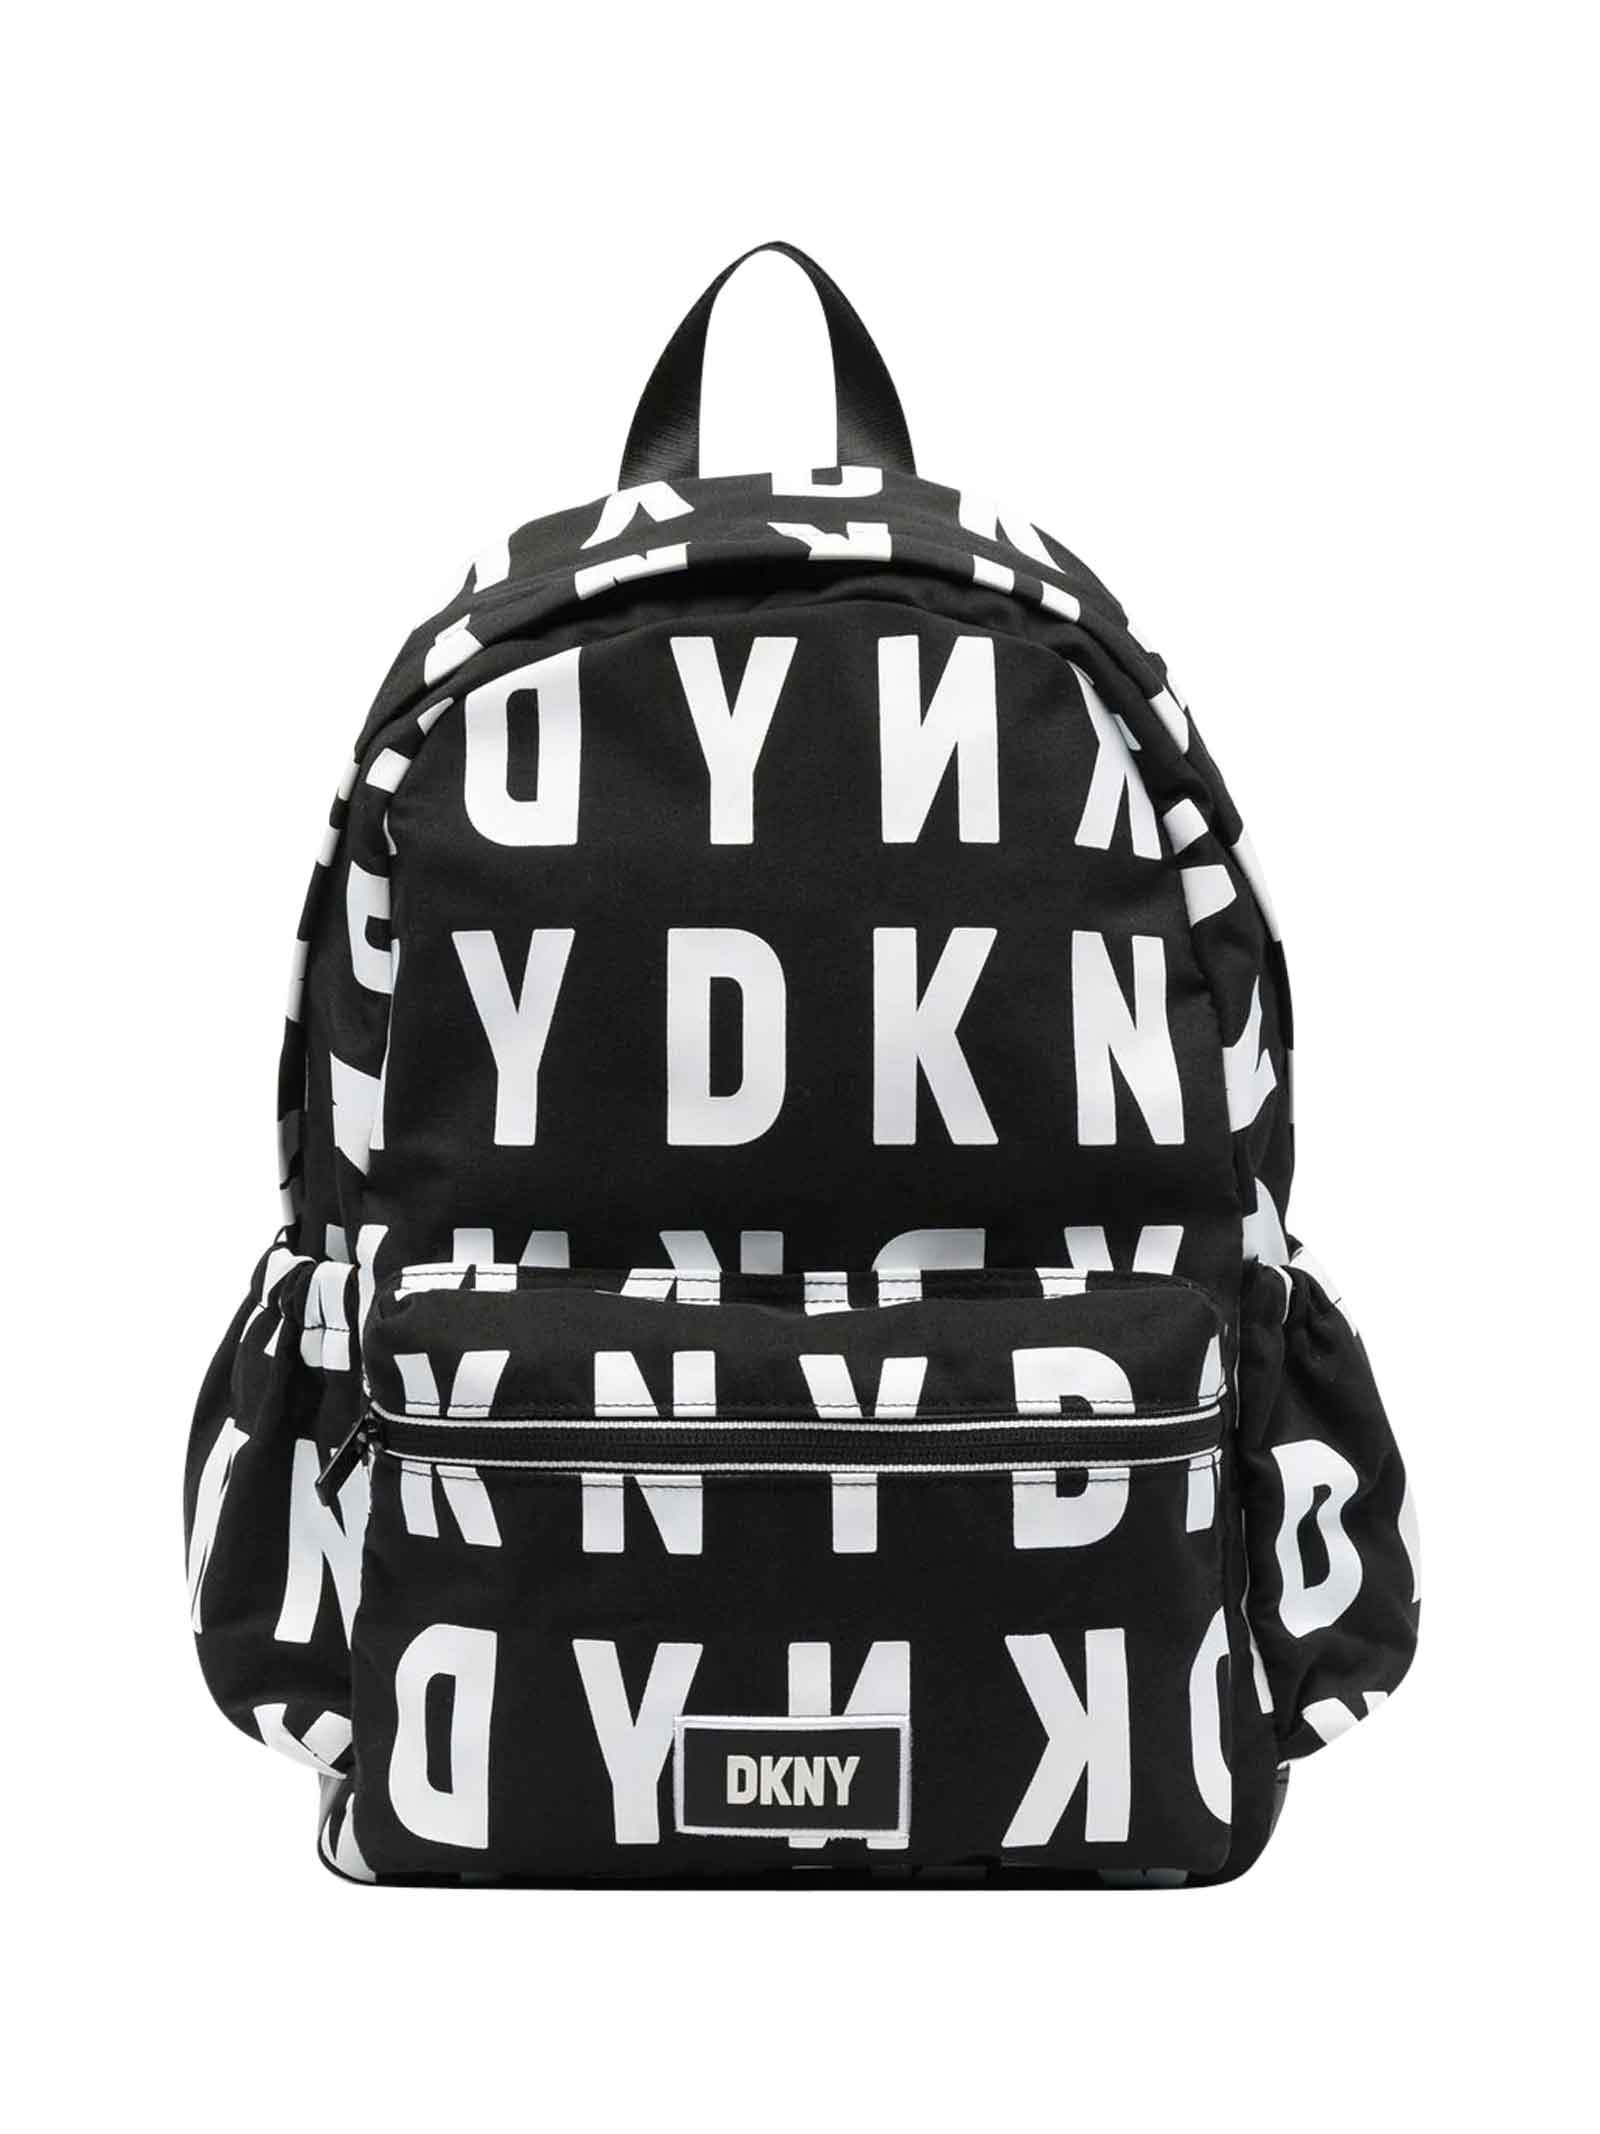 DKNY Black / White Backpack Unisex